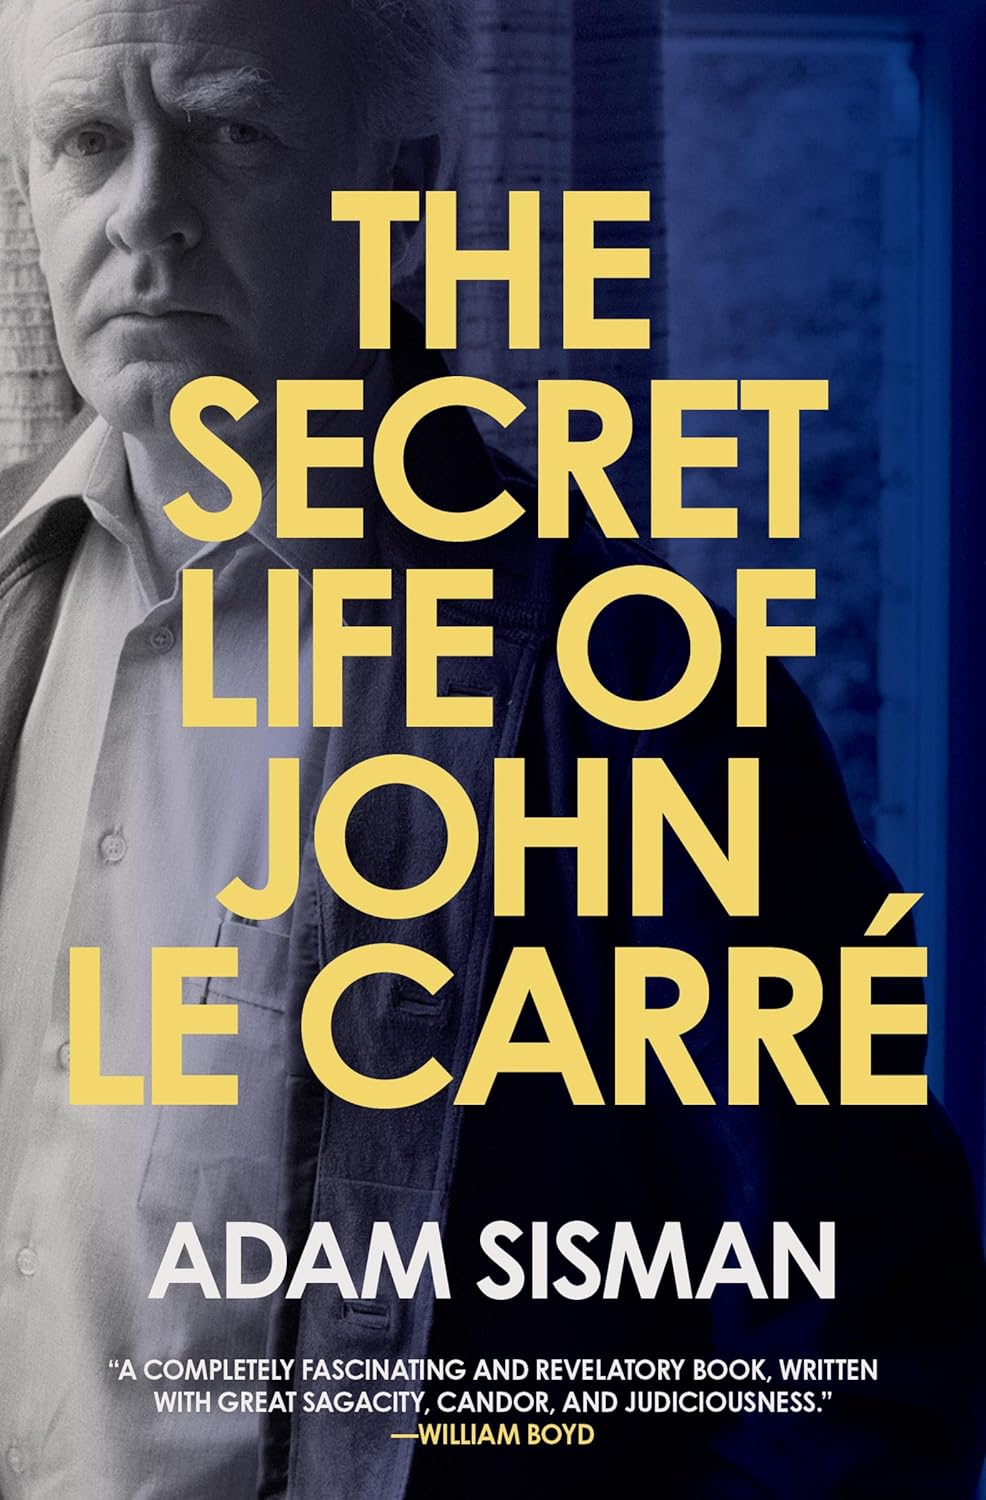 THE SECRET LIFE OF JOHN LE CARRÉ